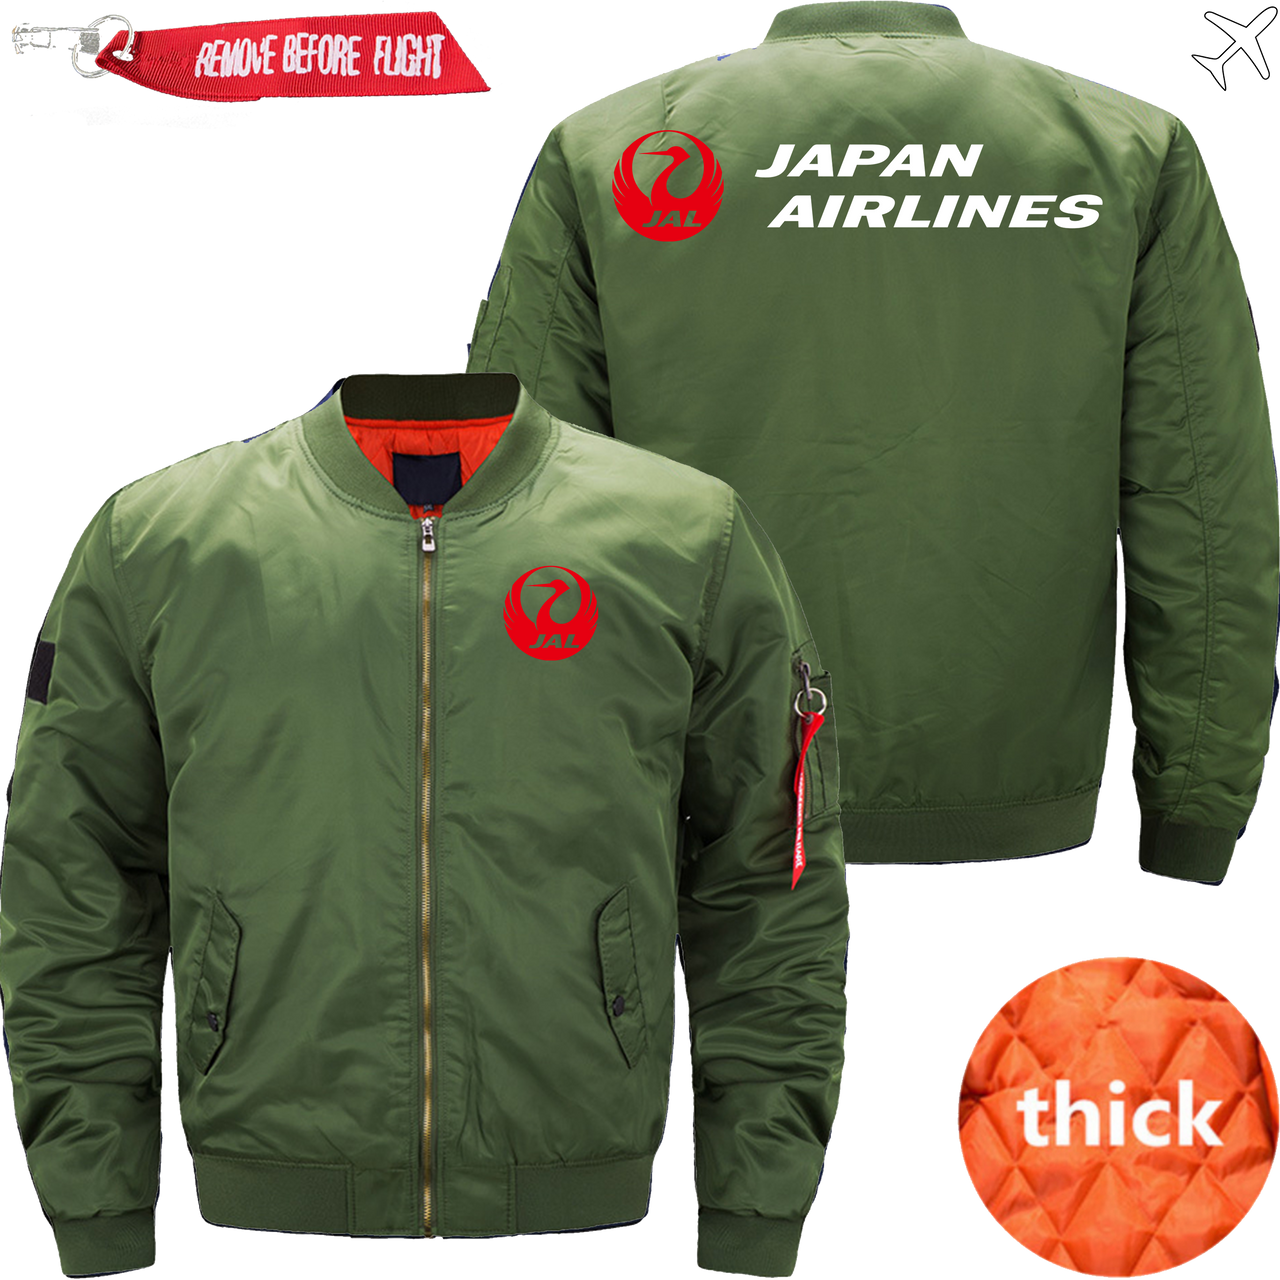 JAPAN AIRLINE JACKET